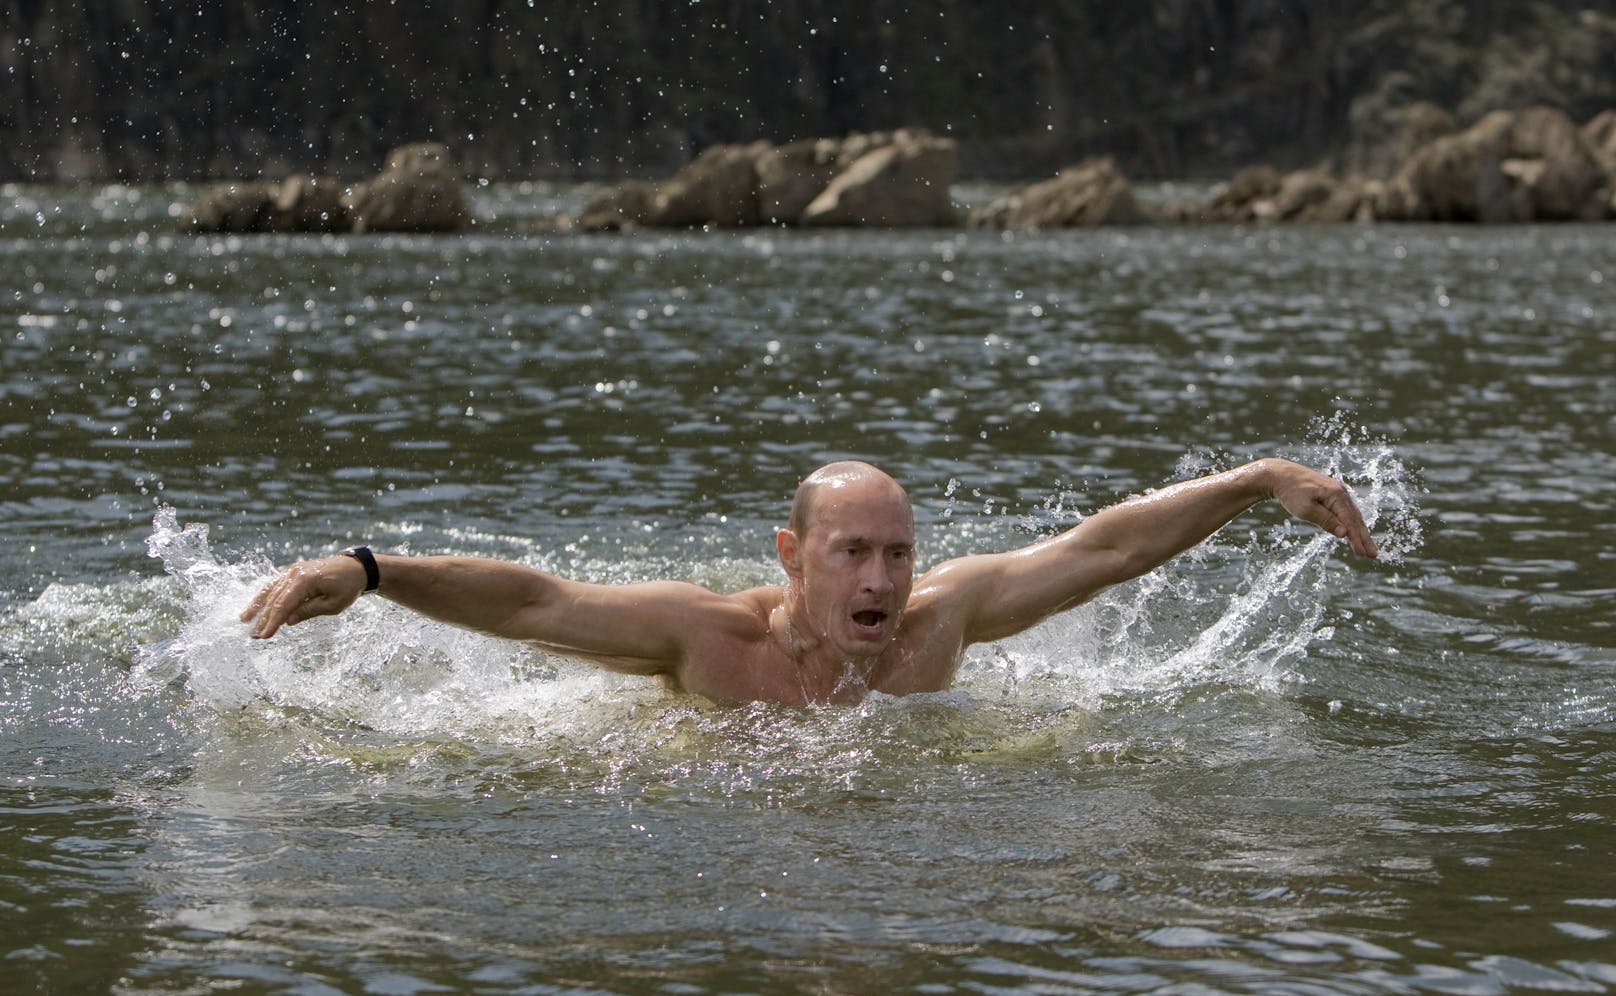 Präsident mit Vorliebe für die Natur: In der Vergangenheit zeigte sich der russische Präsident Wladimir Putin gerne in der bei Outdoor-Aktivitäten.&nbsp;